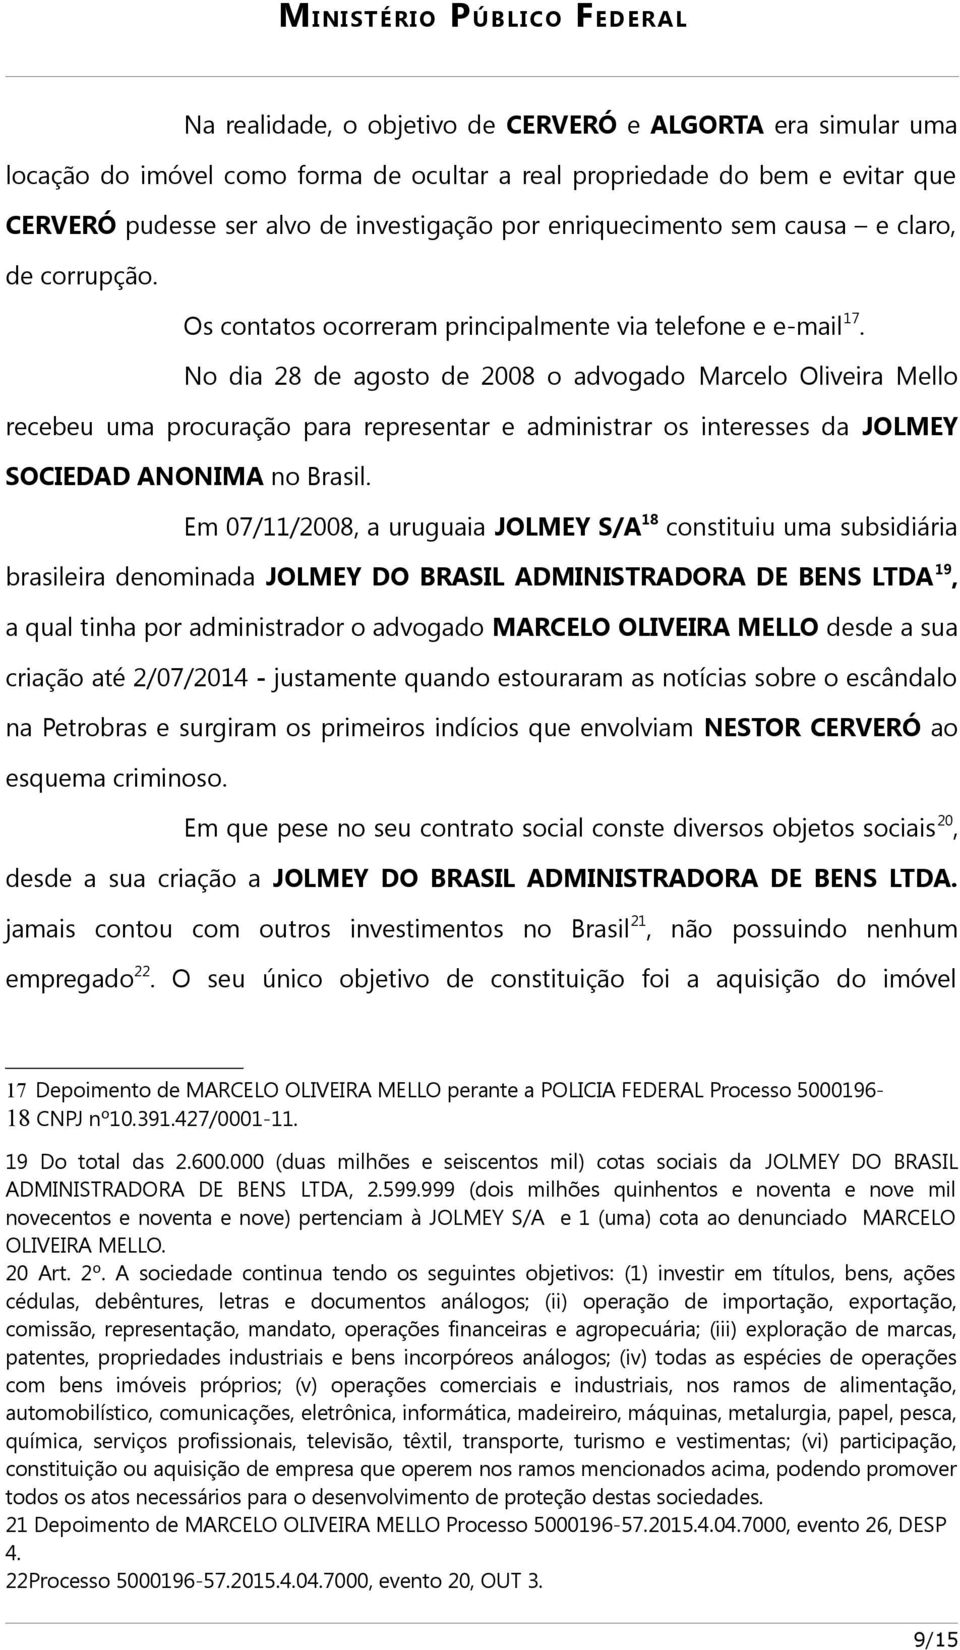 No dia 28 de agosto de 2008 o advogado Marcelo Oliveira Mello recebeu uma procuração para representar e administrar os interesses da JOLMEY SOCIEDAD ANONIMA no Brasil.